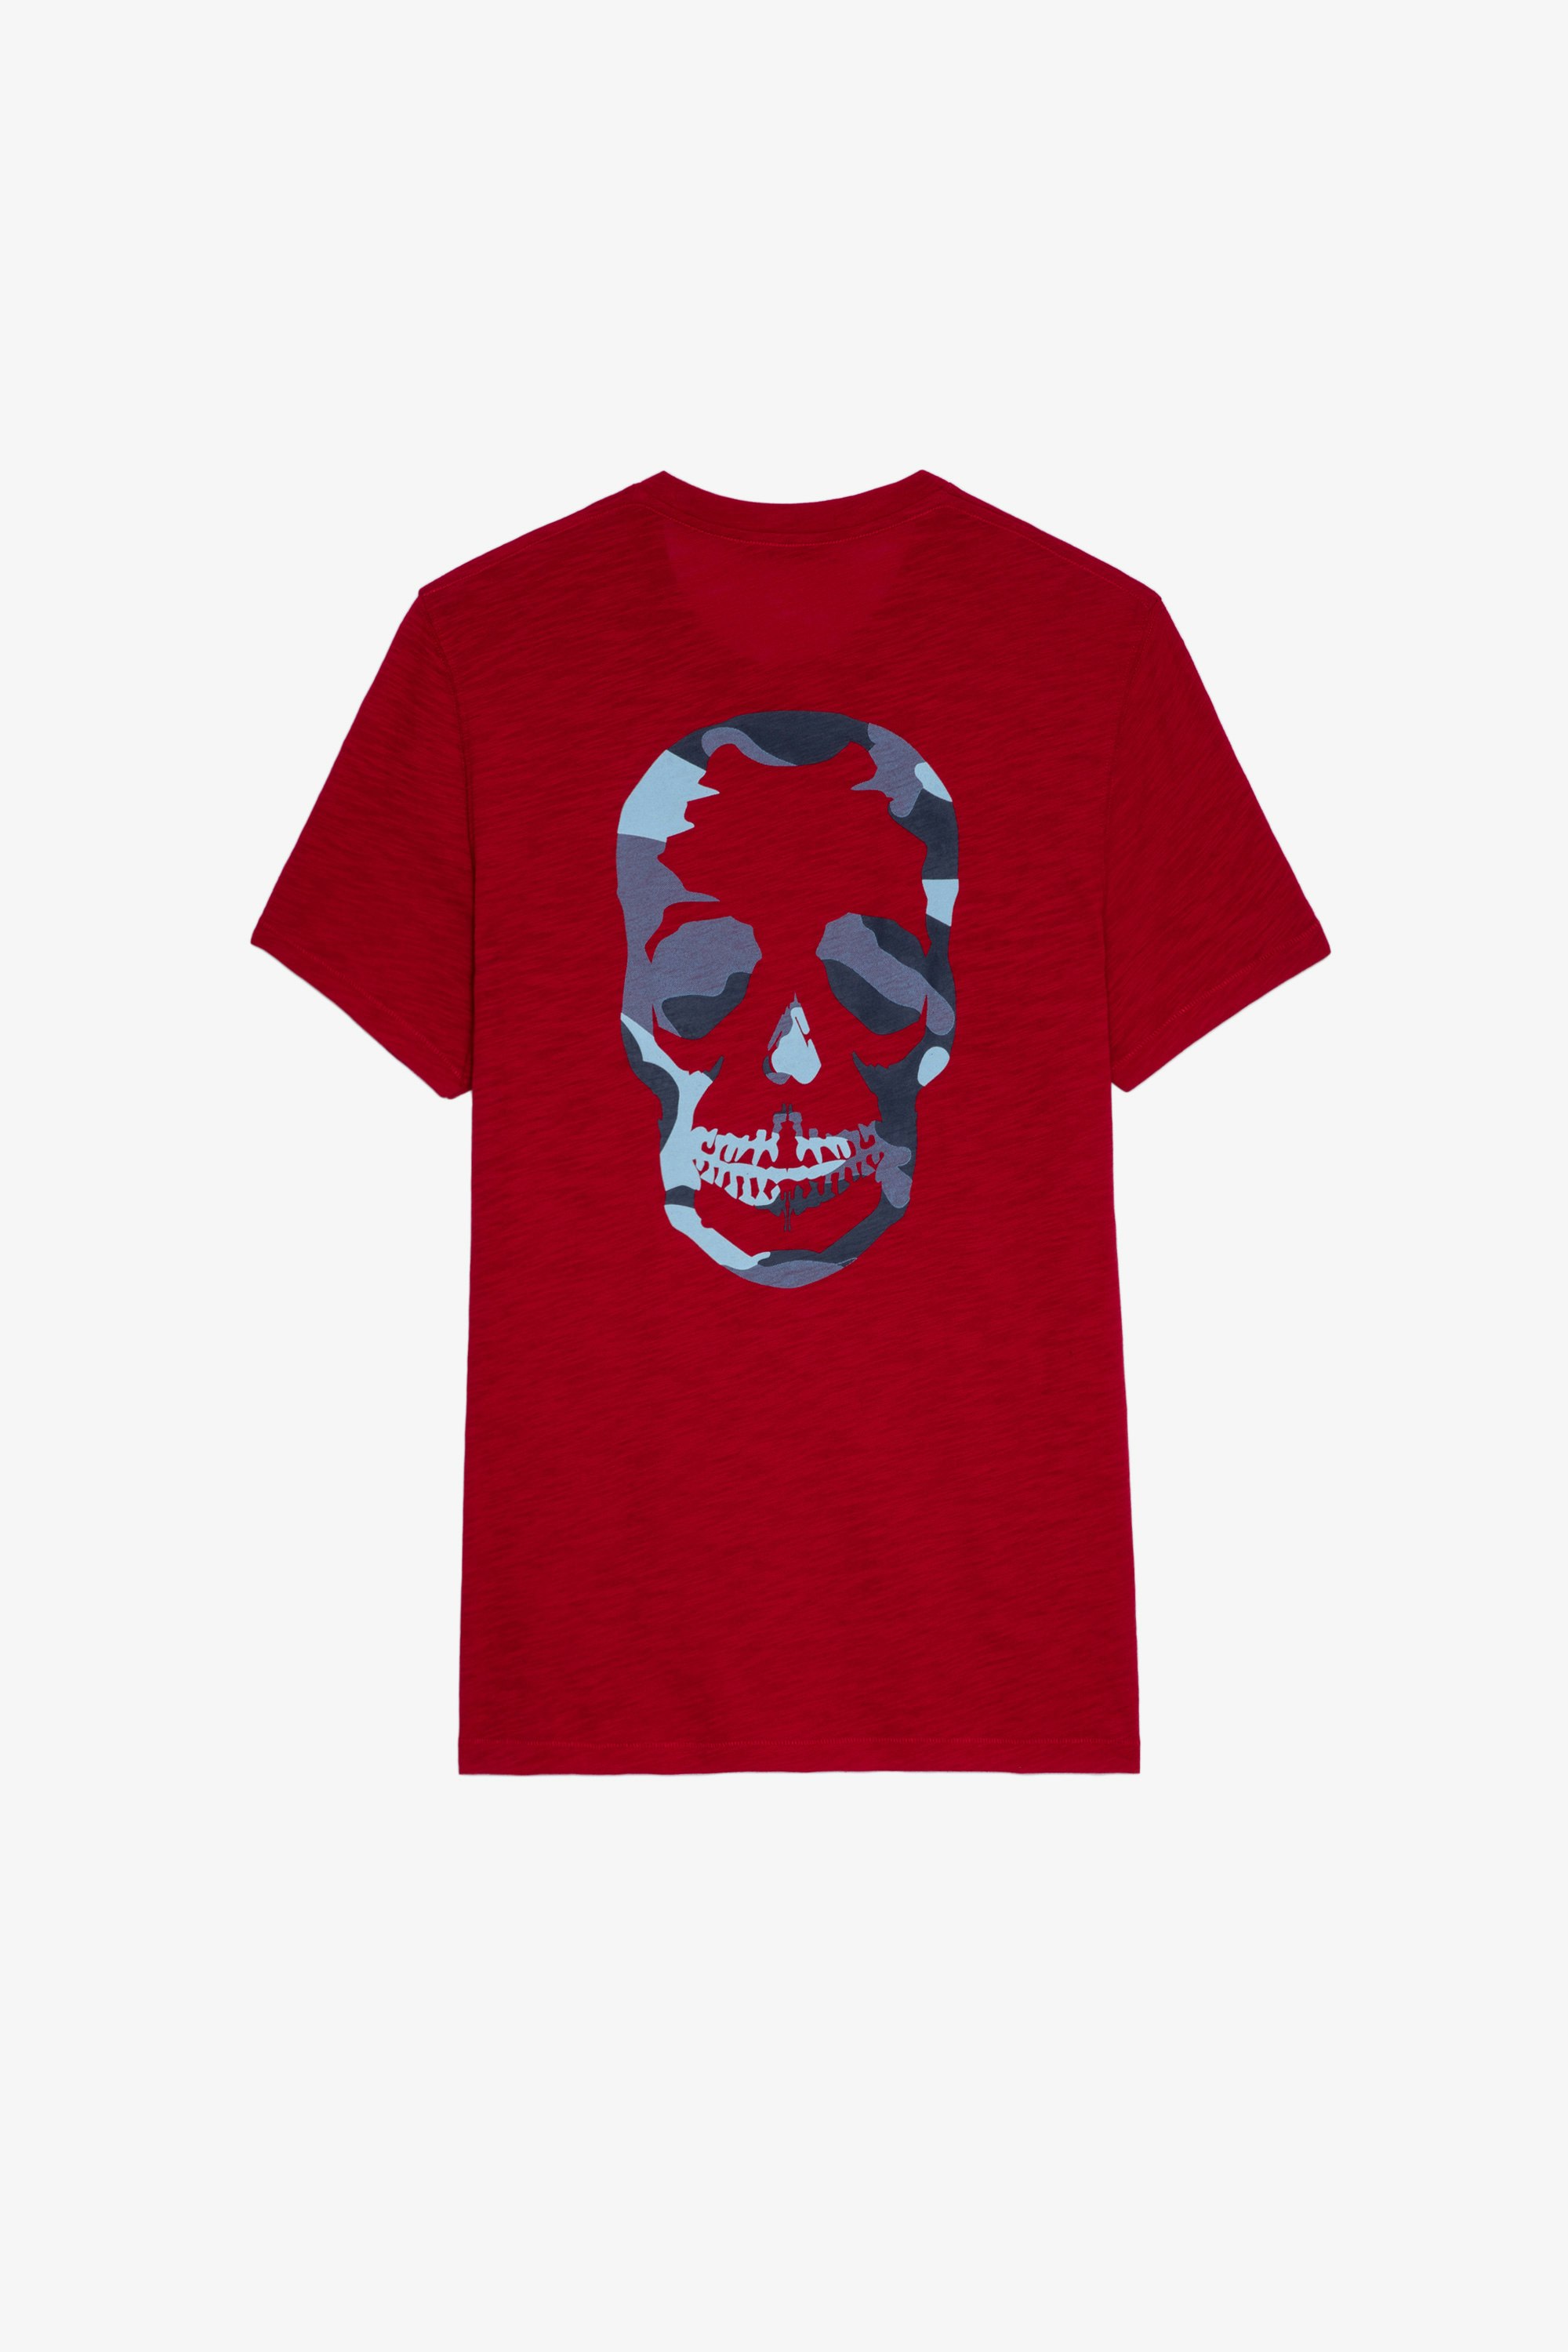 T-shirt Stockholm fiammato T-shirt in cotone fiammato rosso decorata con skull sul retro, da uomo